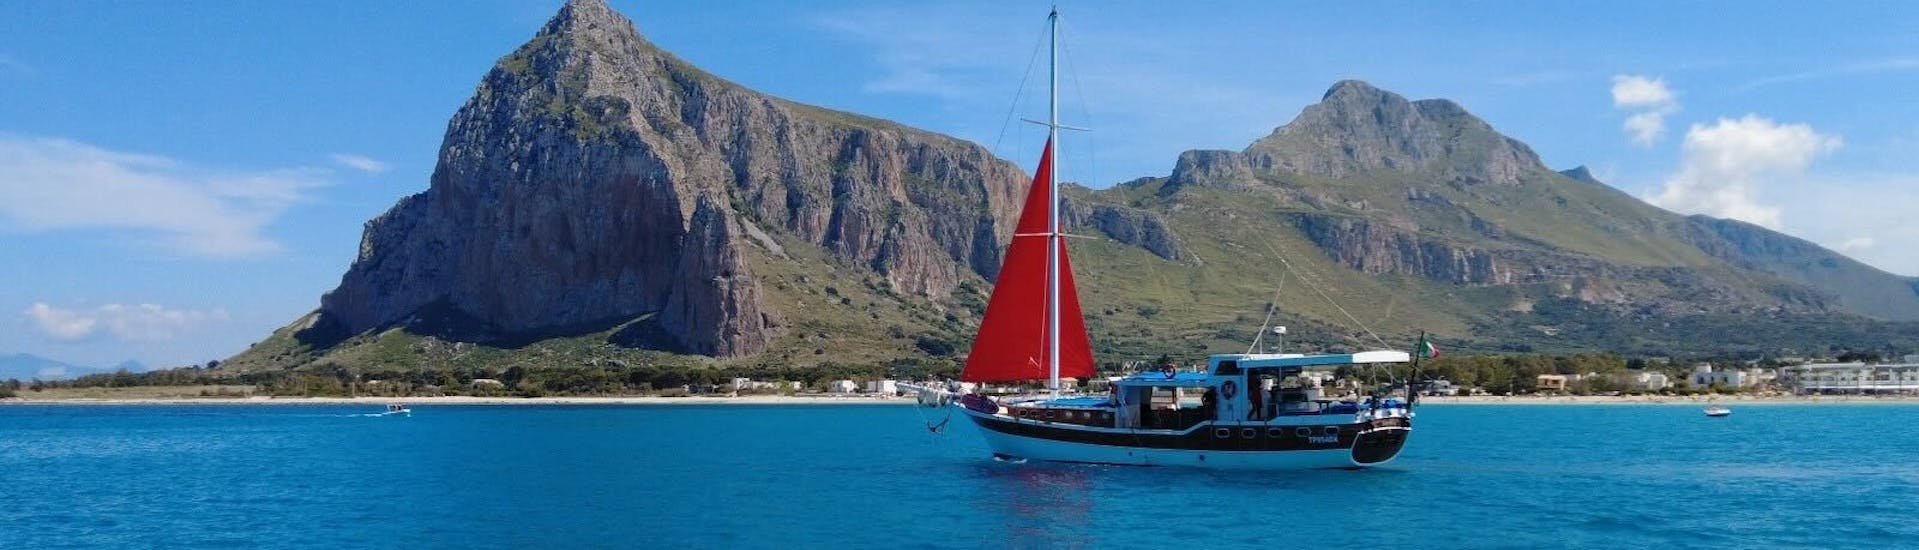 Paseo en barco de San Vito Lo Capo a Tonnara del Secco  & baño en el mar.